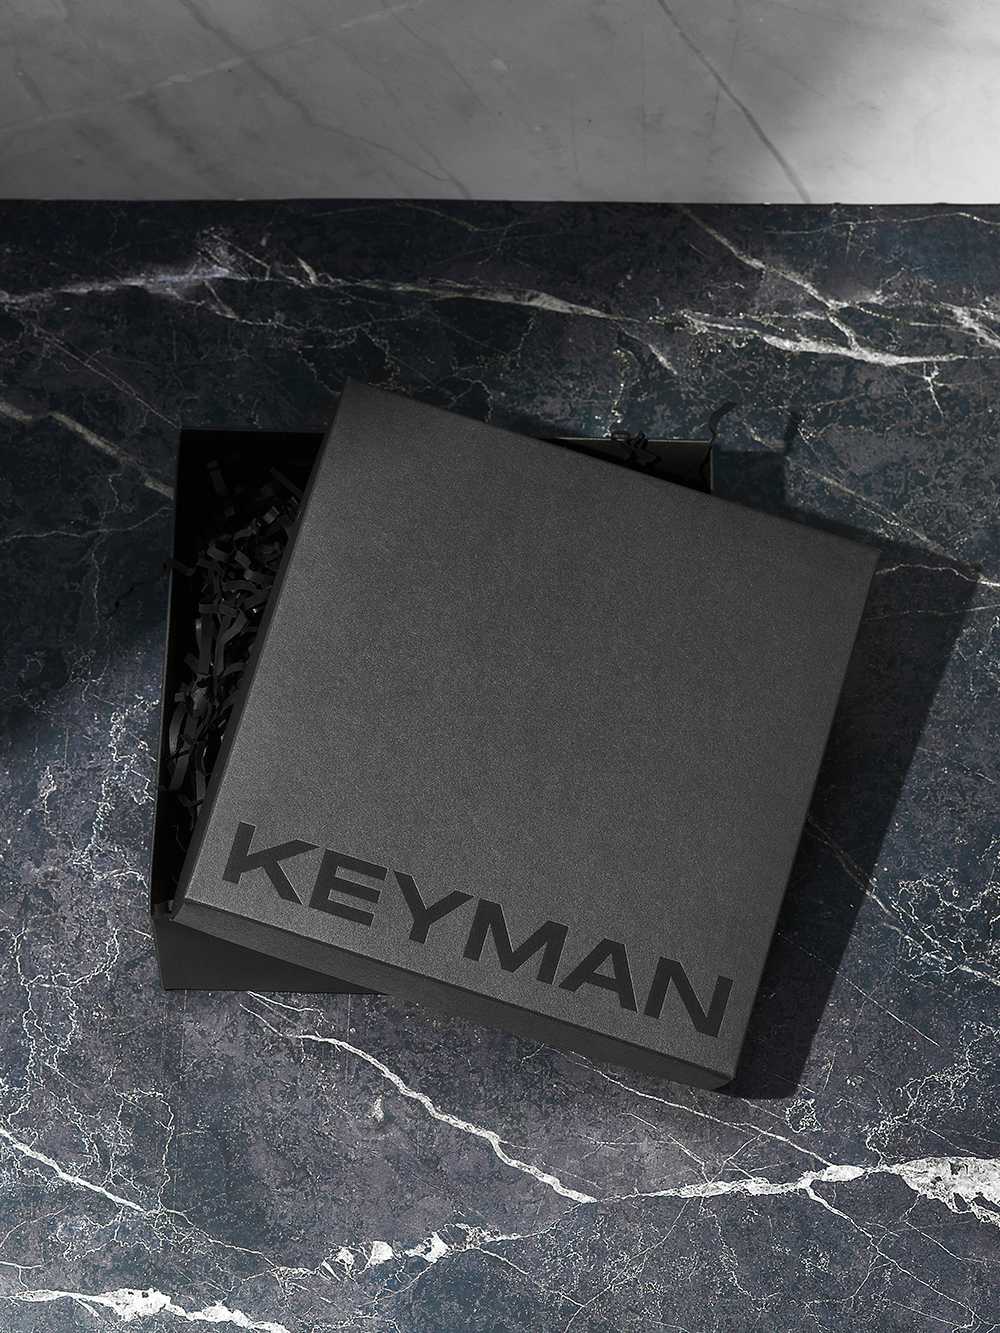 Подарочная коробка Keyman